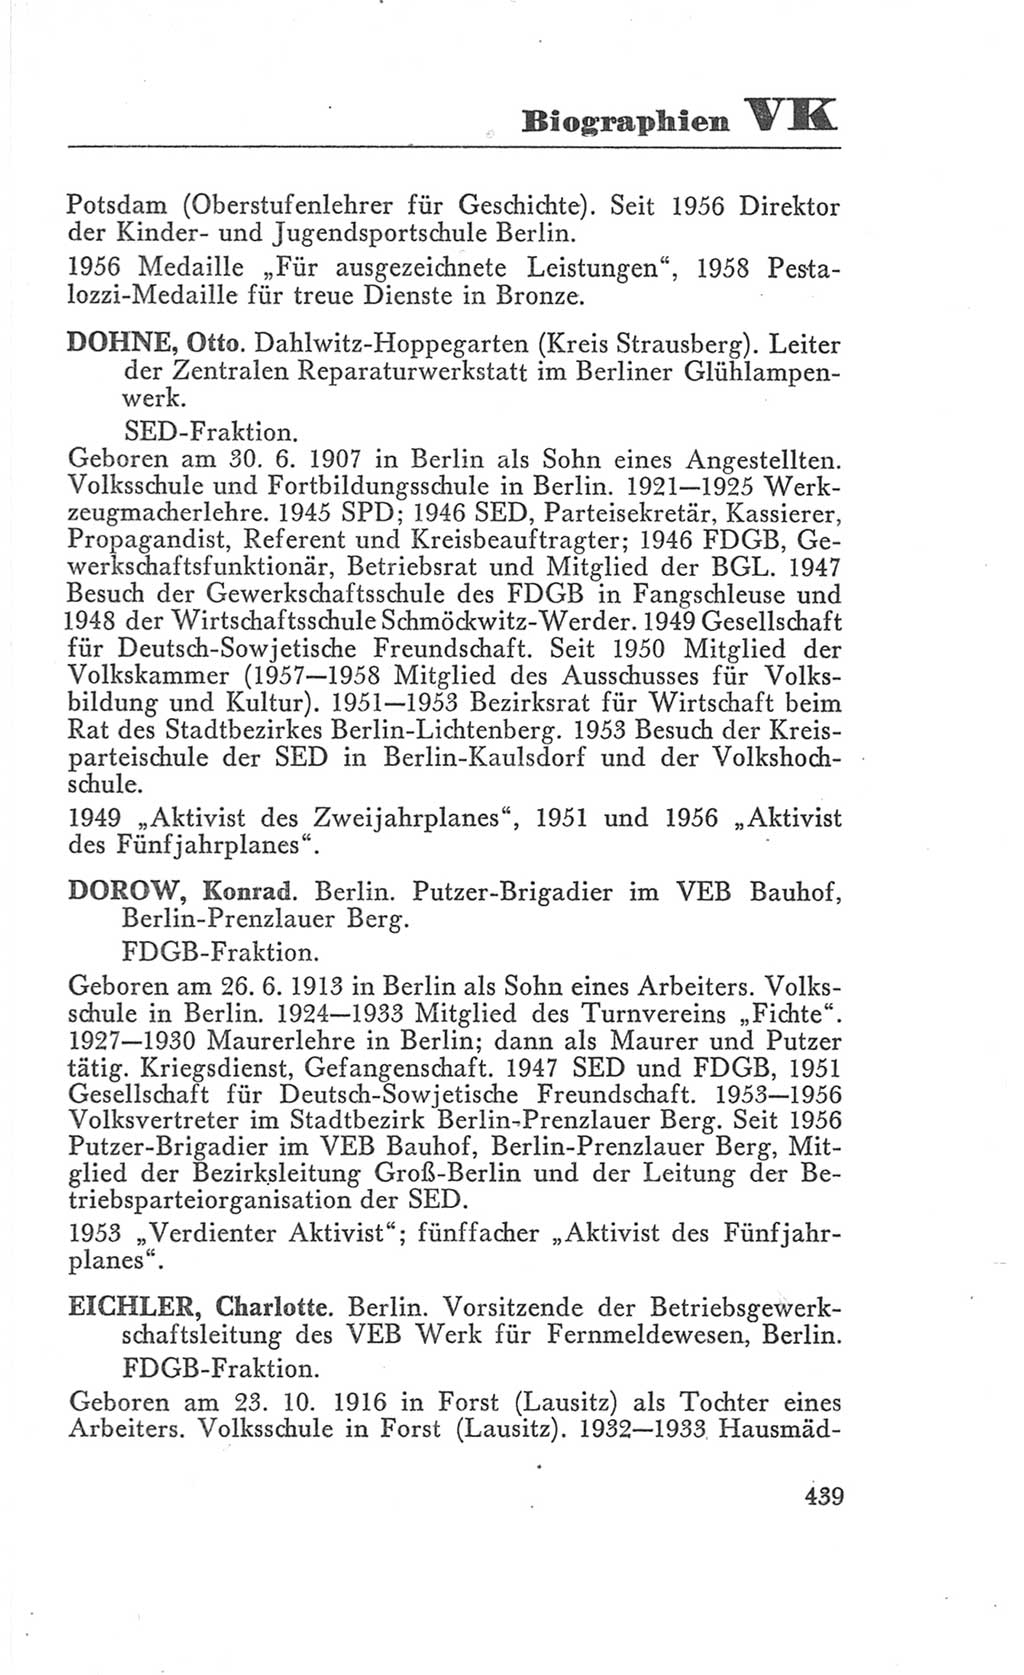 Handbuch der Volkskammer (VK) der Deutschen Demokratischen Republik (DDR), 3. Wahlperiode 1958-1963, Seite 439 (Hdb. VK. DDR 3. WP. 1958-1963, S. 439)